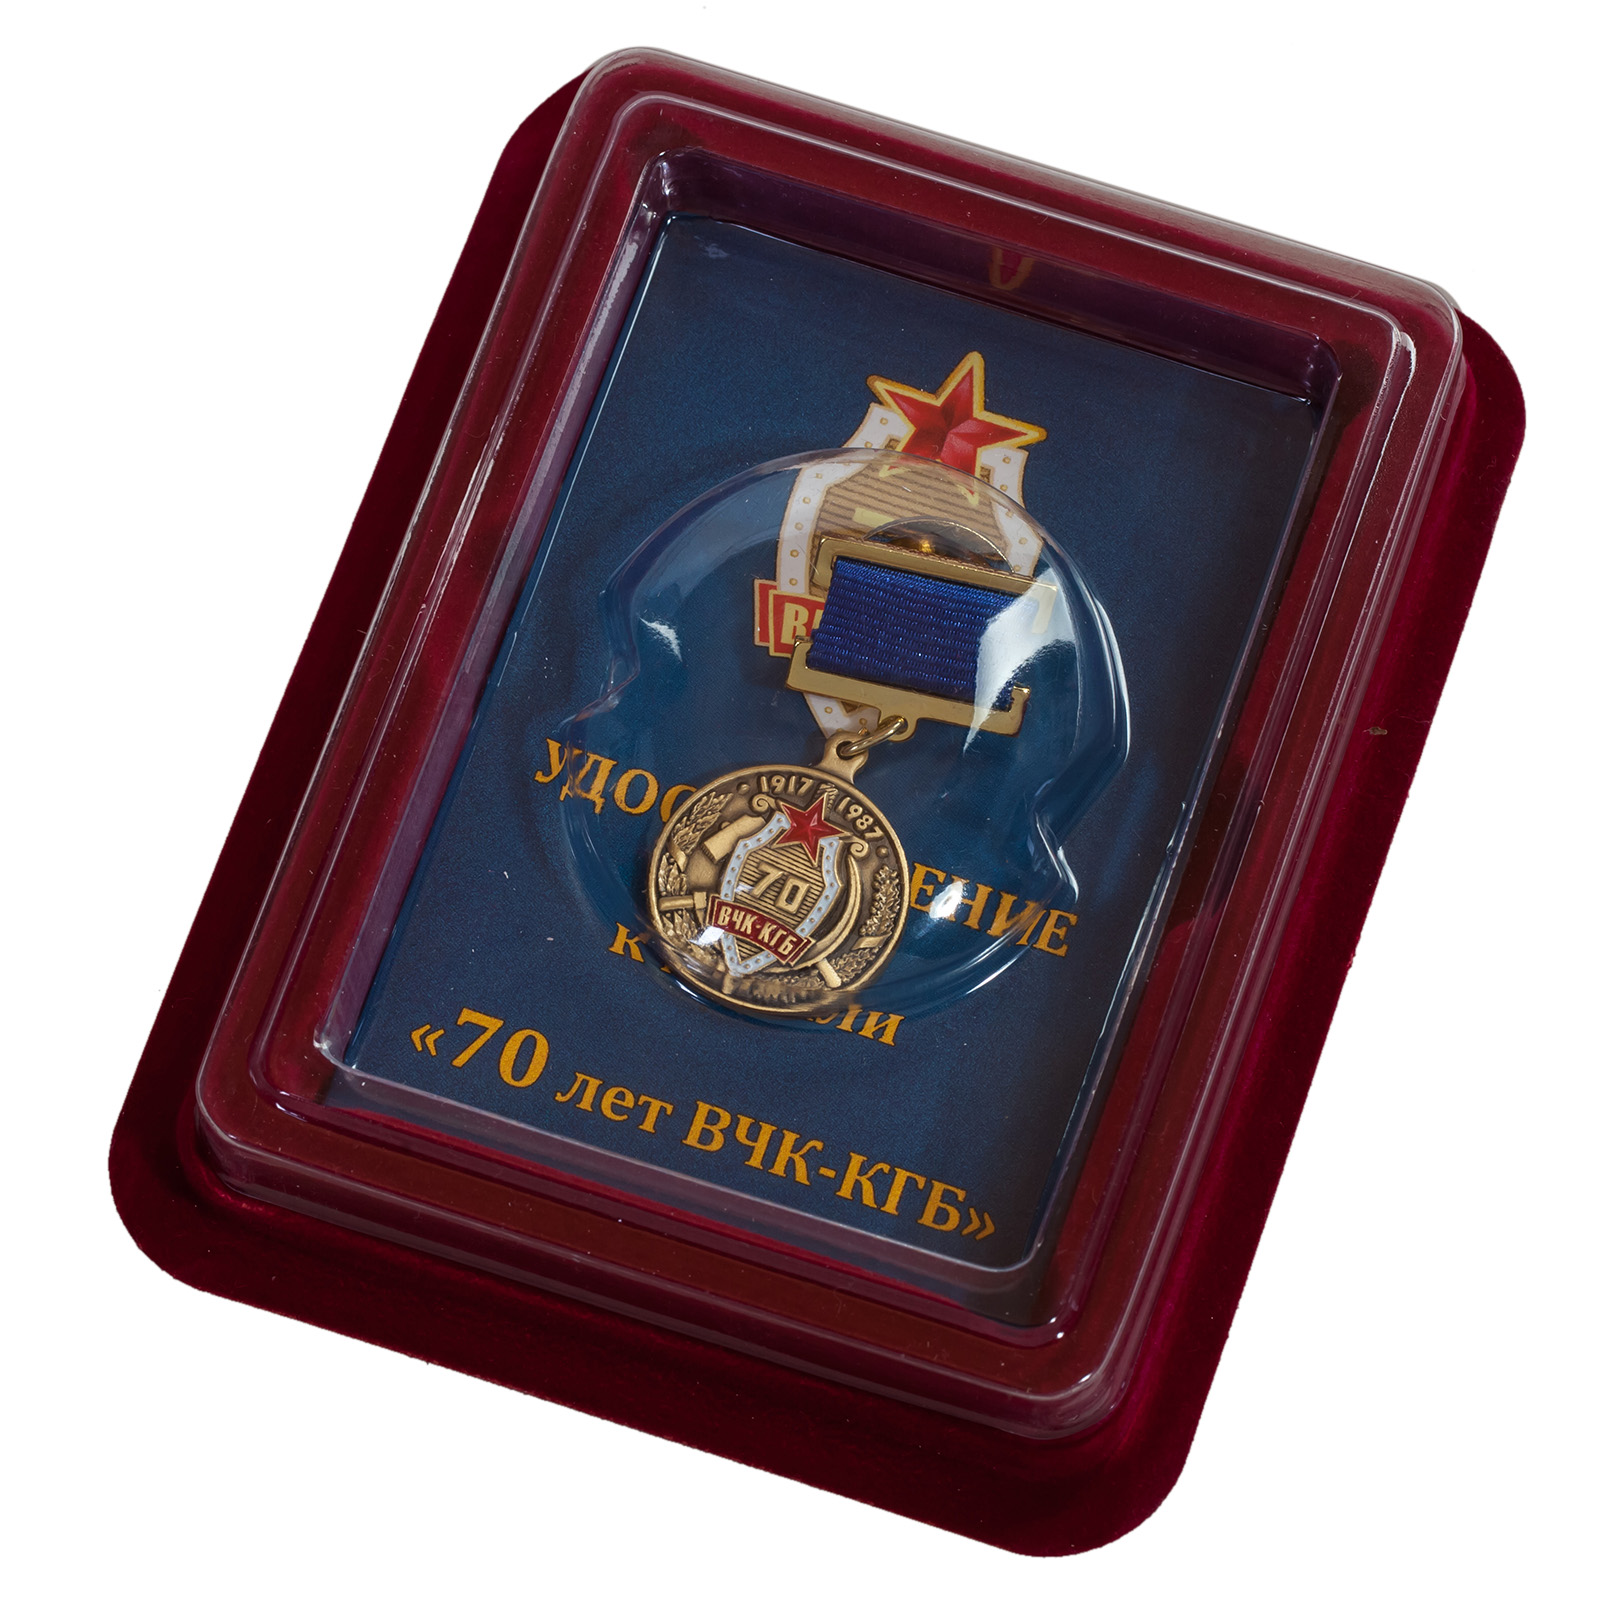 Медаль "70-летие ВЧК-КГБ" - купить в подарок